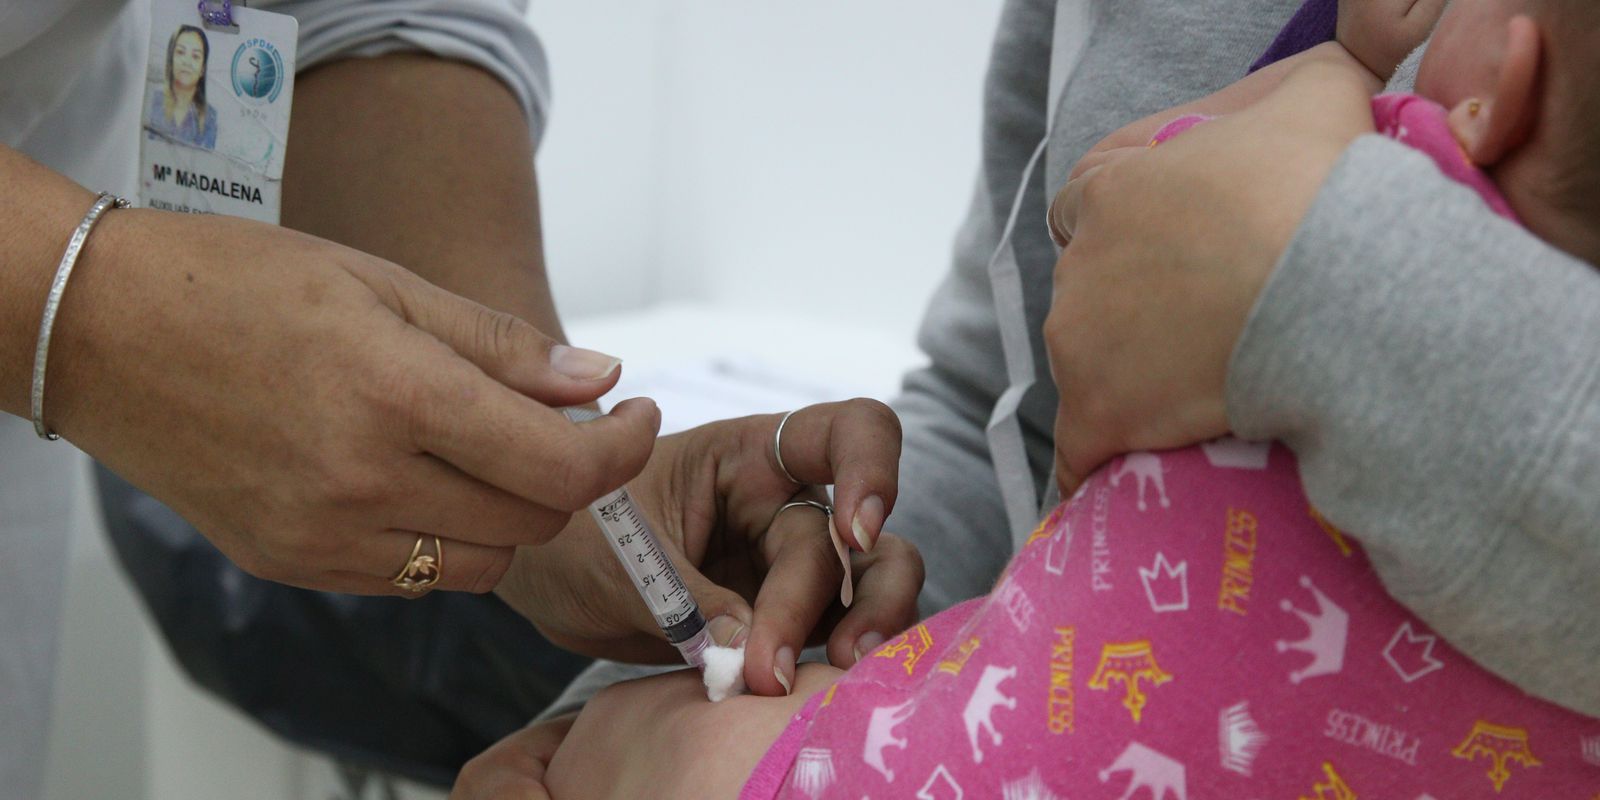 Governos e instituições científicas são melhores fontes sobre vacinas